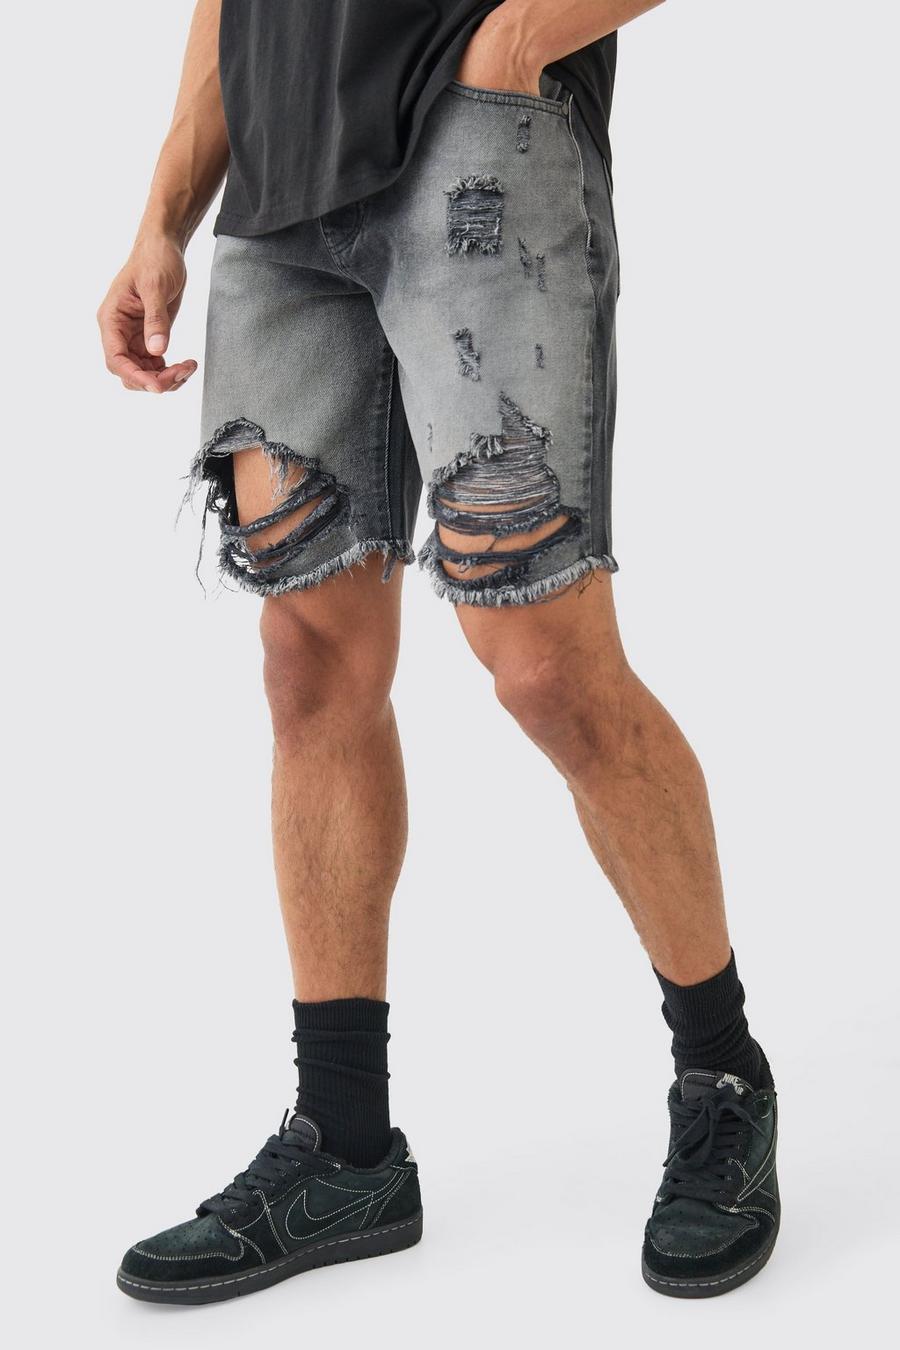 Pantalones cortos vaqueros holgados largos sin tratar rotos en negro desteñido, Washed black image number 1